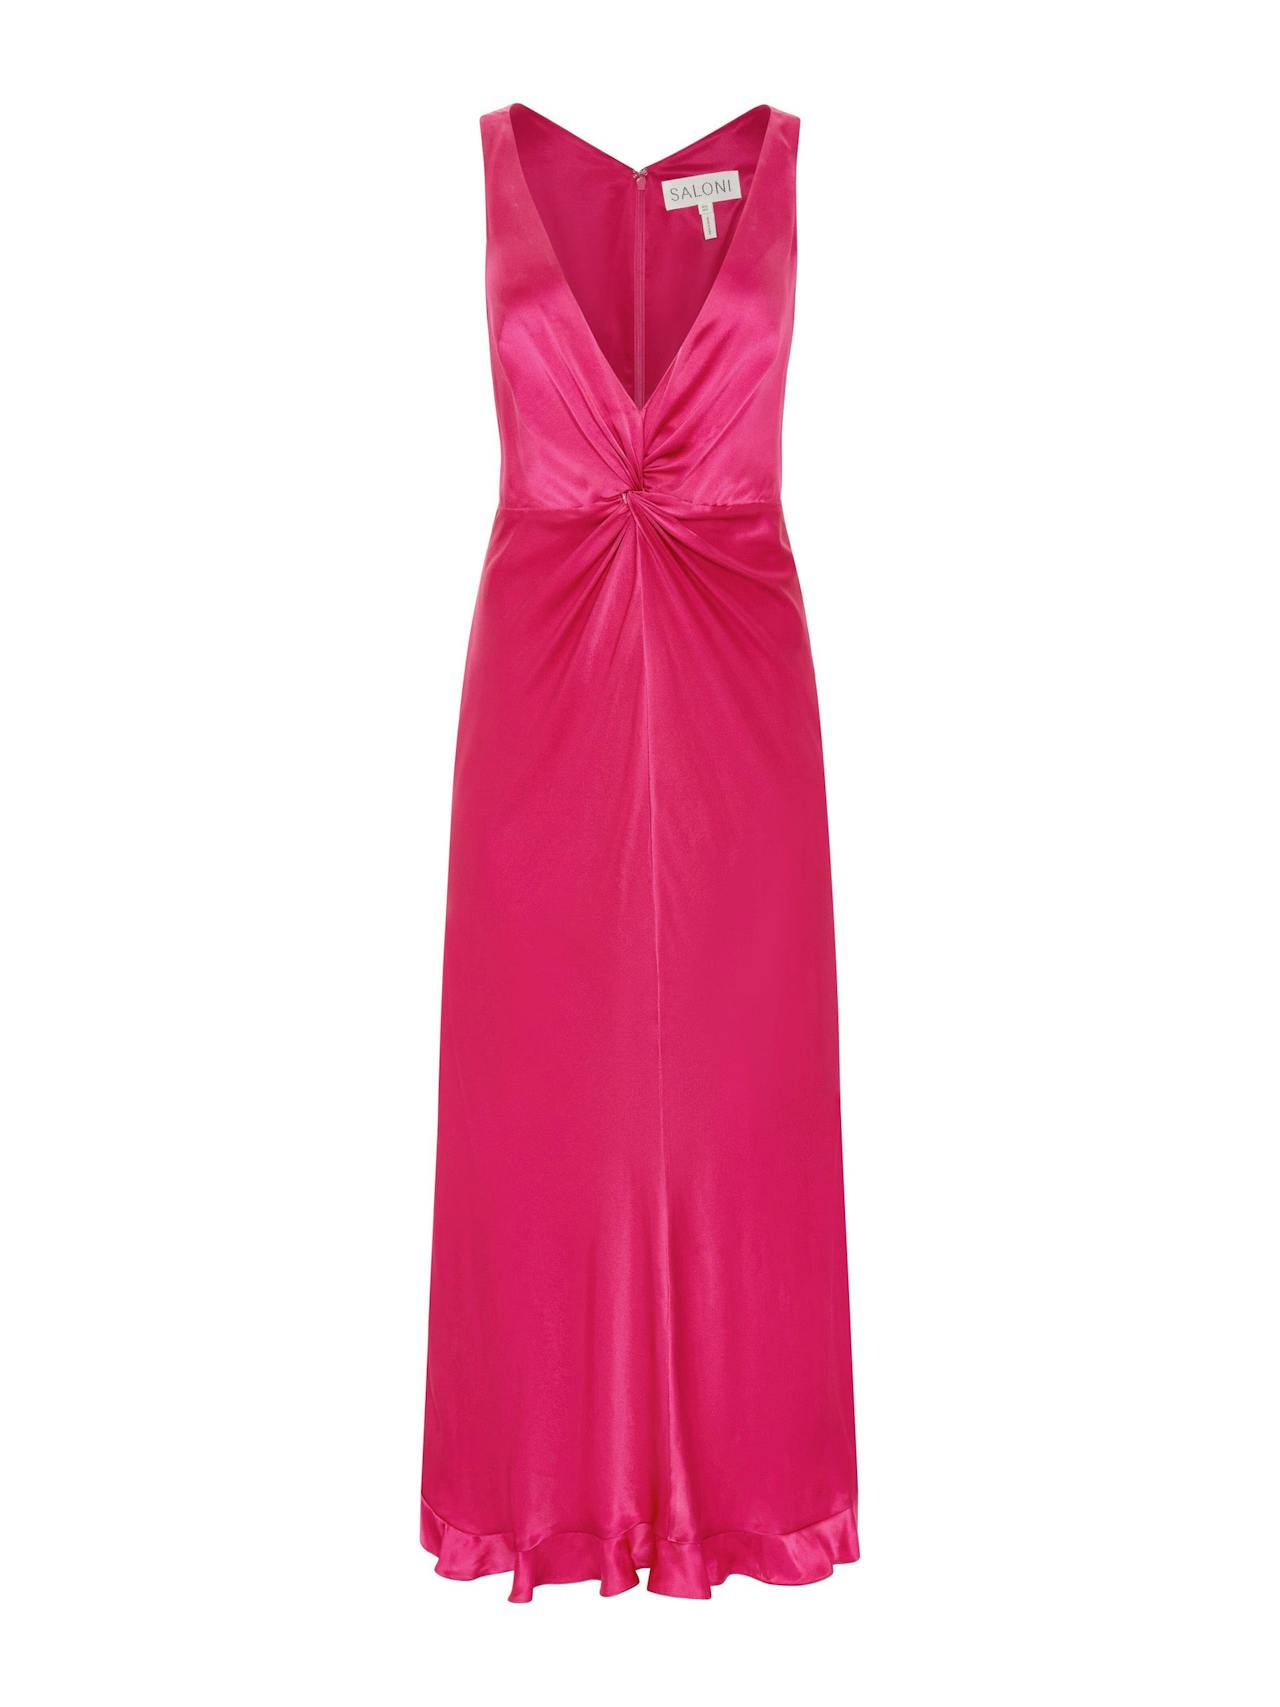 Bright pink Fia dress